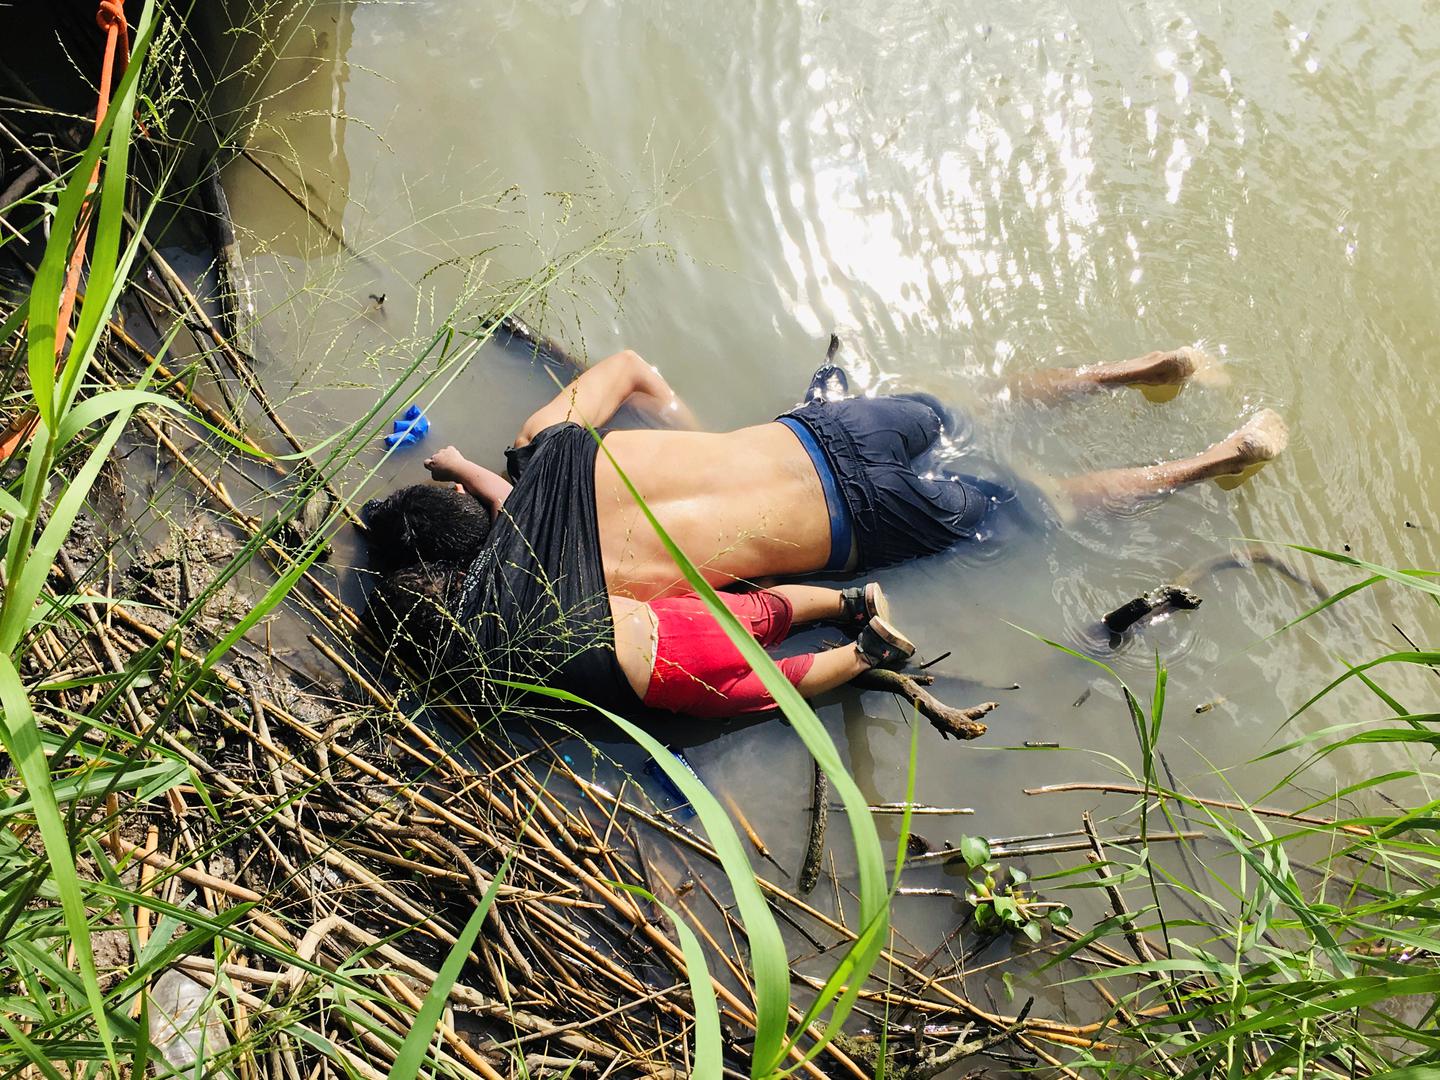 Oscar Alberto Martinez Ramirez (26) iz Salvadora i njegova dvogodišnja kći Valeria utopili su se u nedjelju u rijeci Rio Grande, dok je supruga Vanessa uspjela preživjeti. Prizor je šokirao SAD